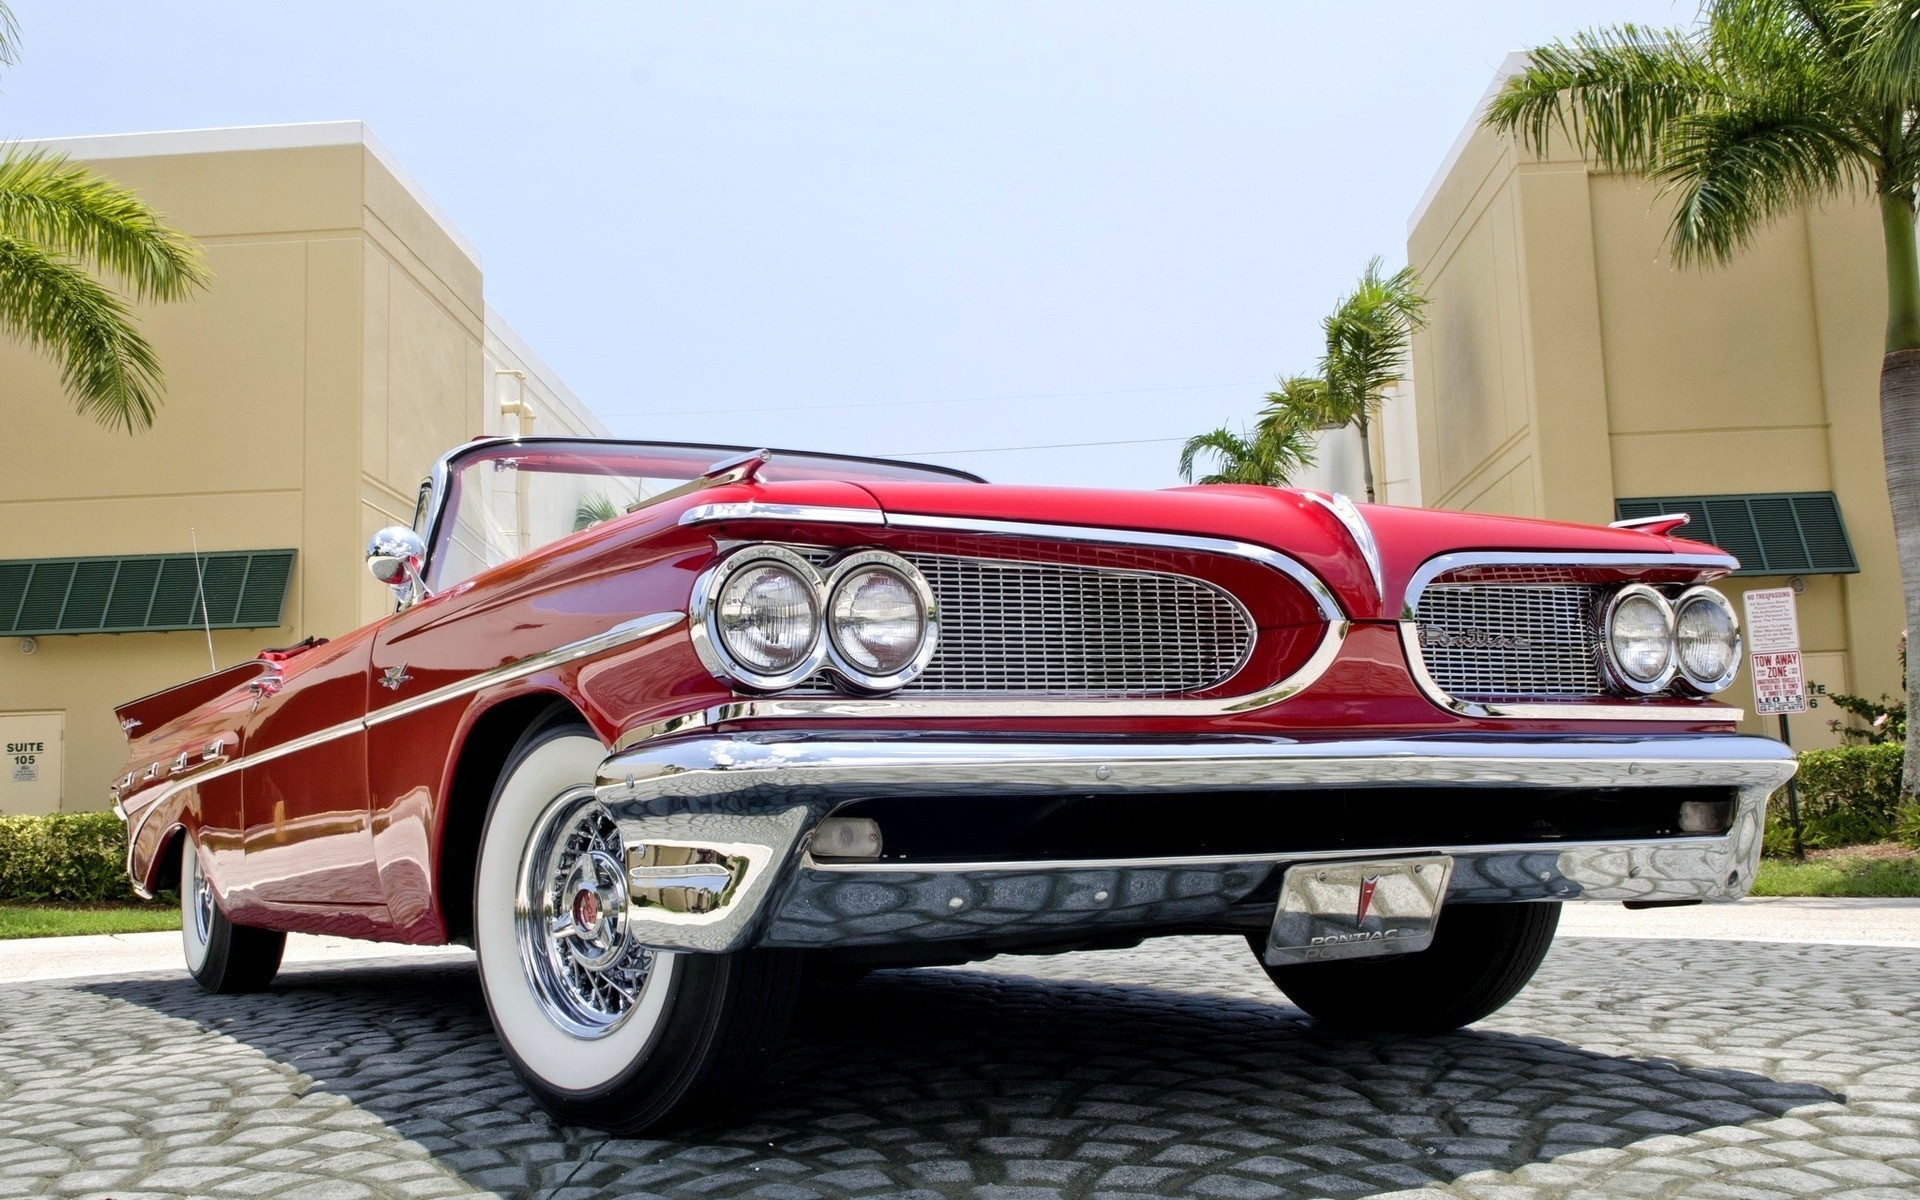 1959 Red Pontiac Cabrio for 1920 x 1200 widescreen resolution